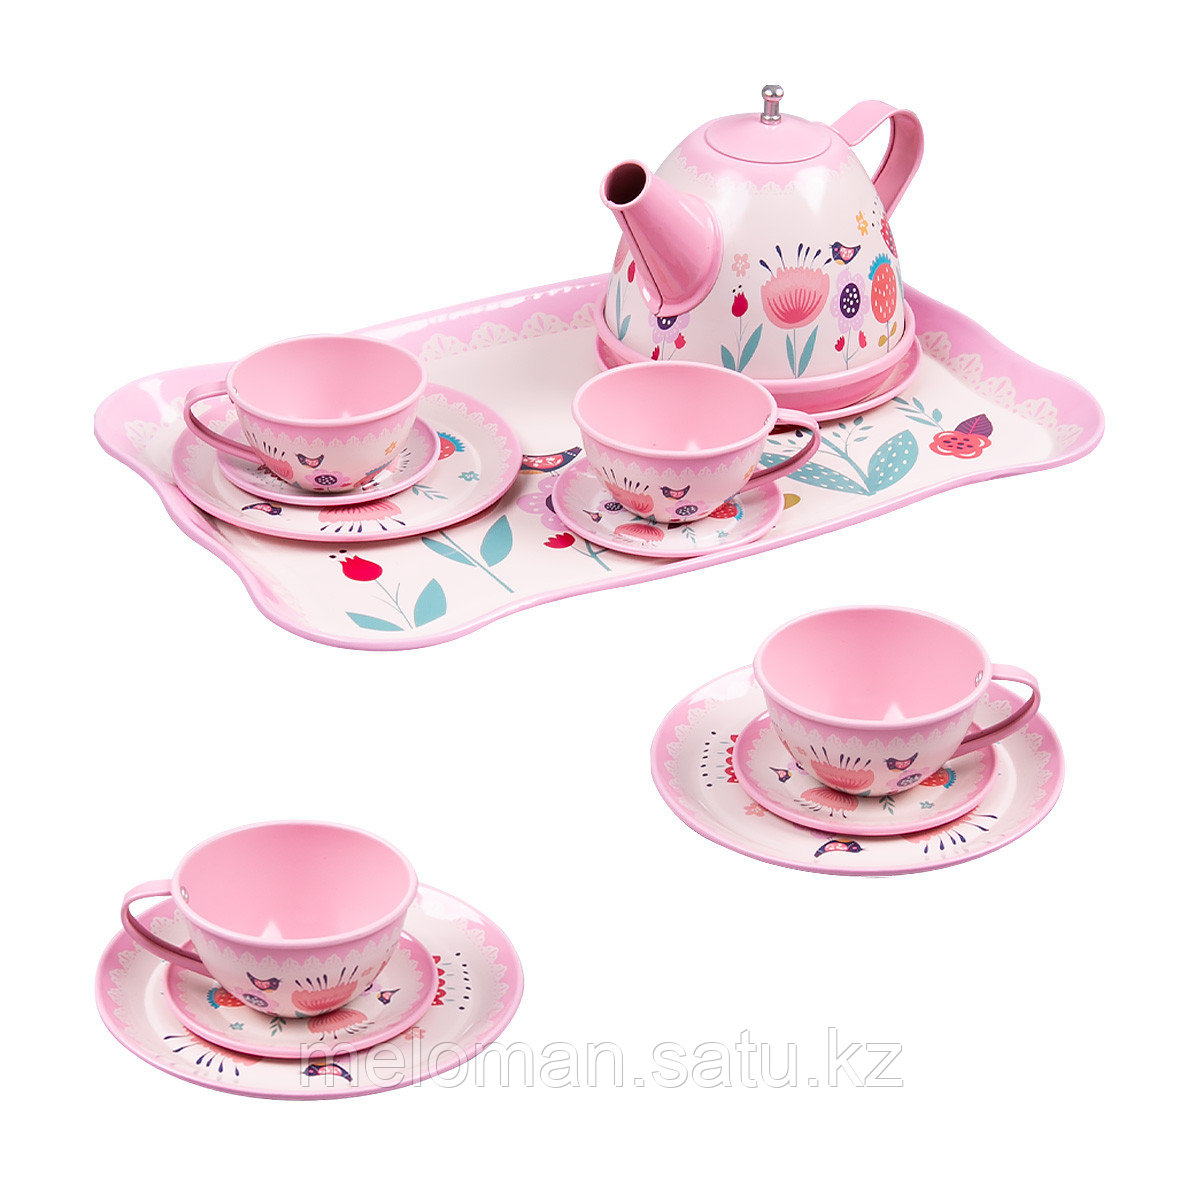 YTY TOYS: Игровой набор чайной посуды "Розовые цветы"